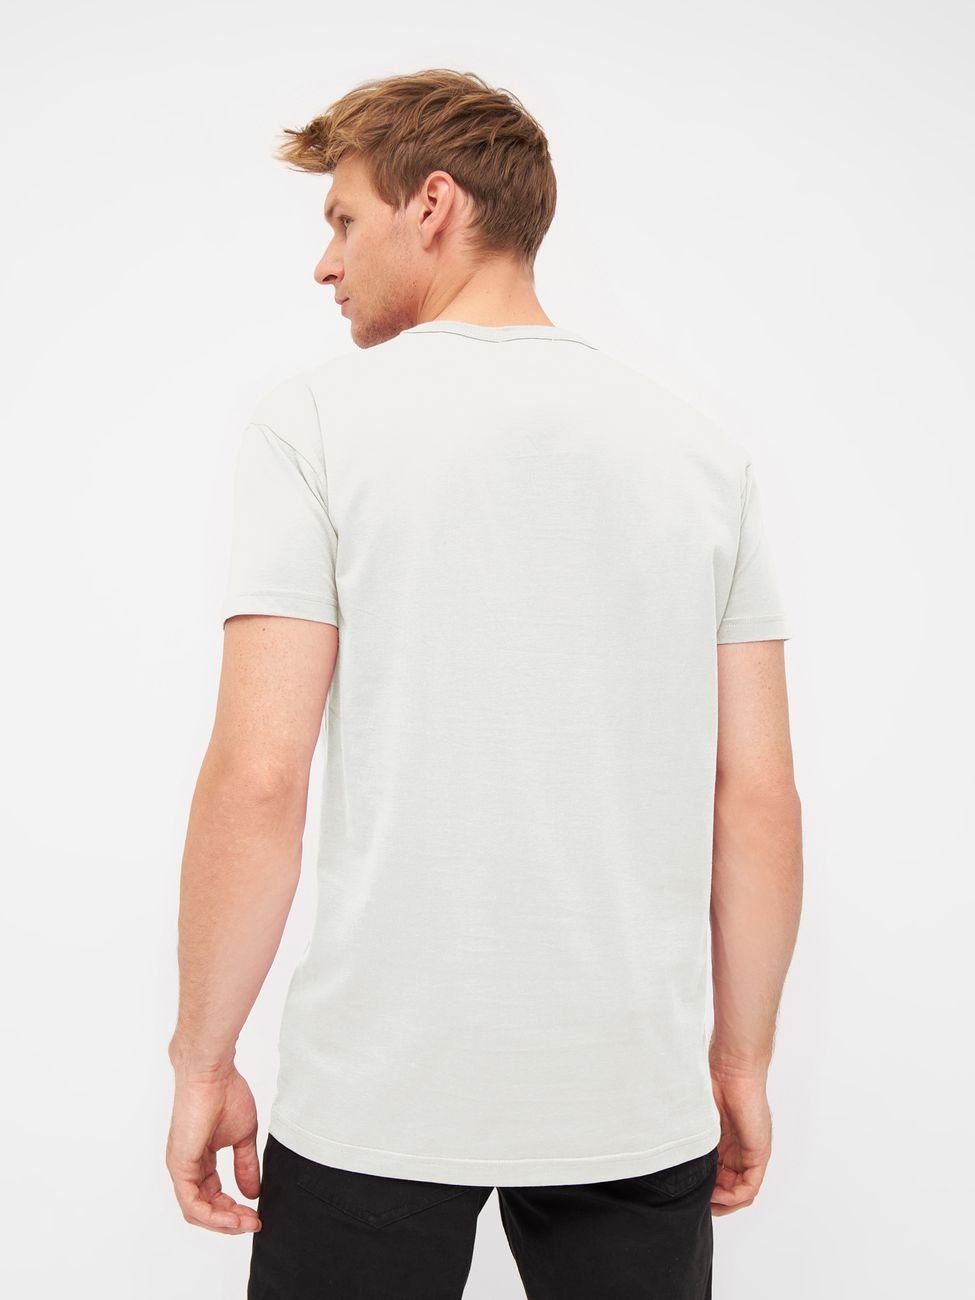 Derbe Print-Shirt Herren Matrosenmöwe T-Shirt White (1-tlg) Off